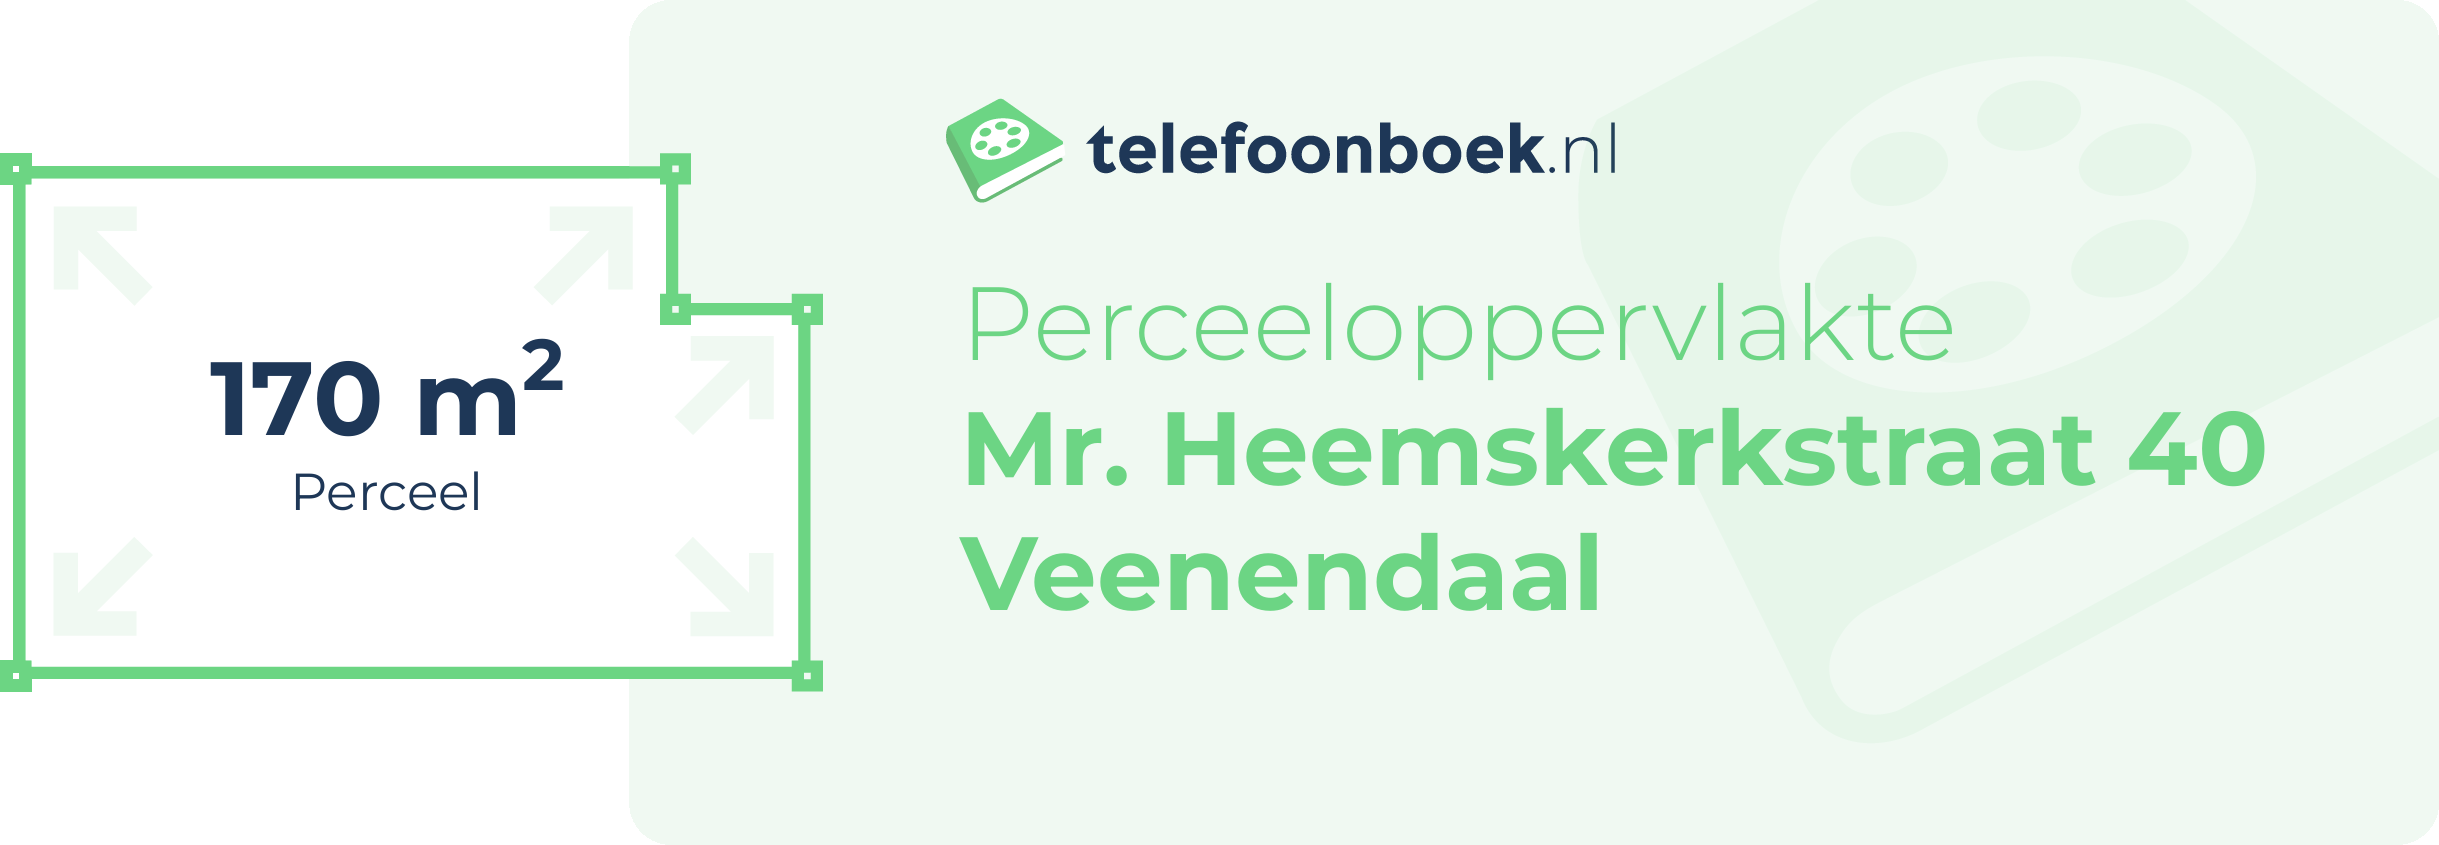 Perceeloppervlakte Mr. Heemskerkstraat 40 Veenendaal